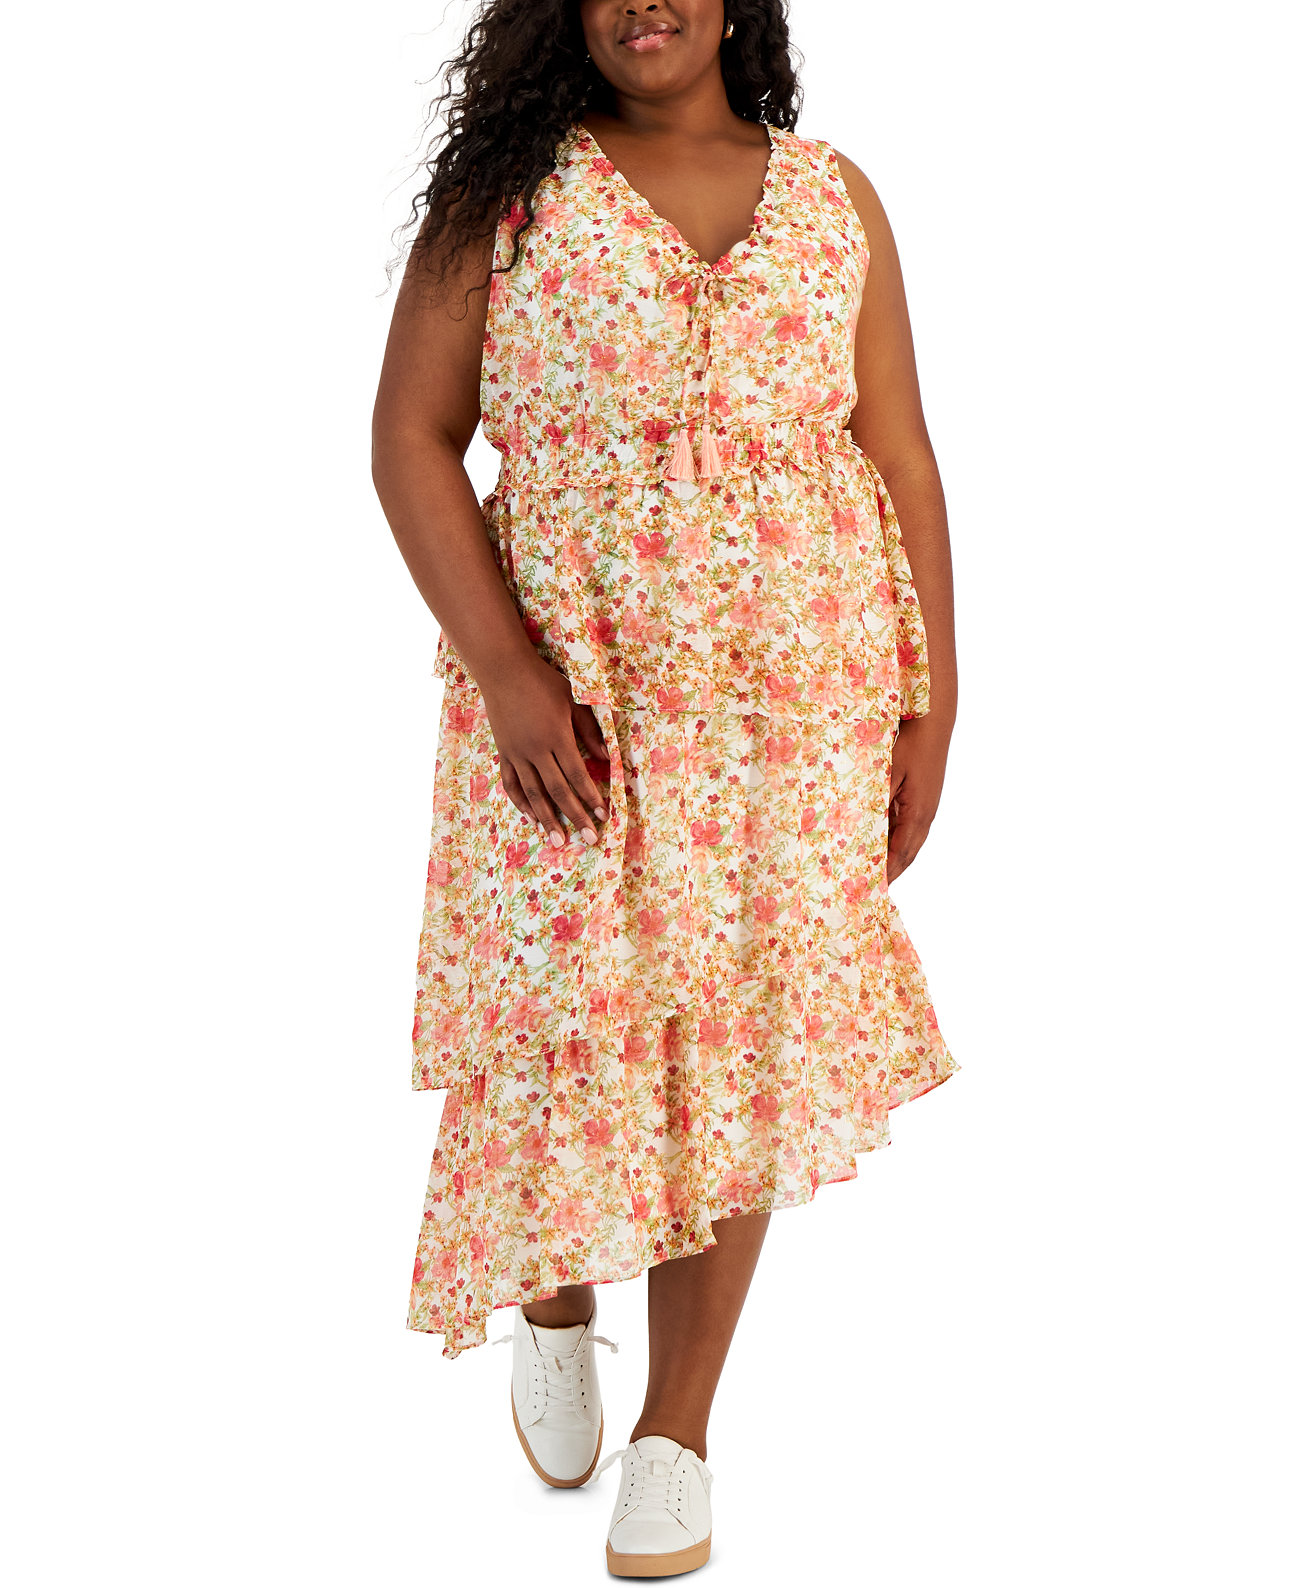 Многоуровневое платье миди больших размеров с цветочным принтом Taylor